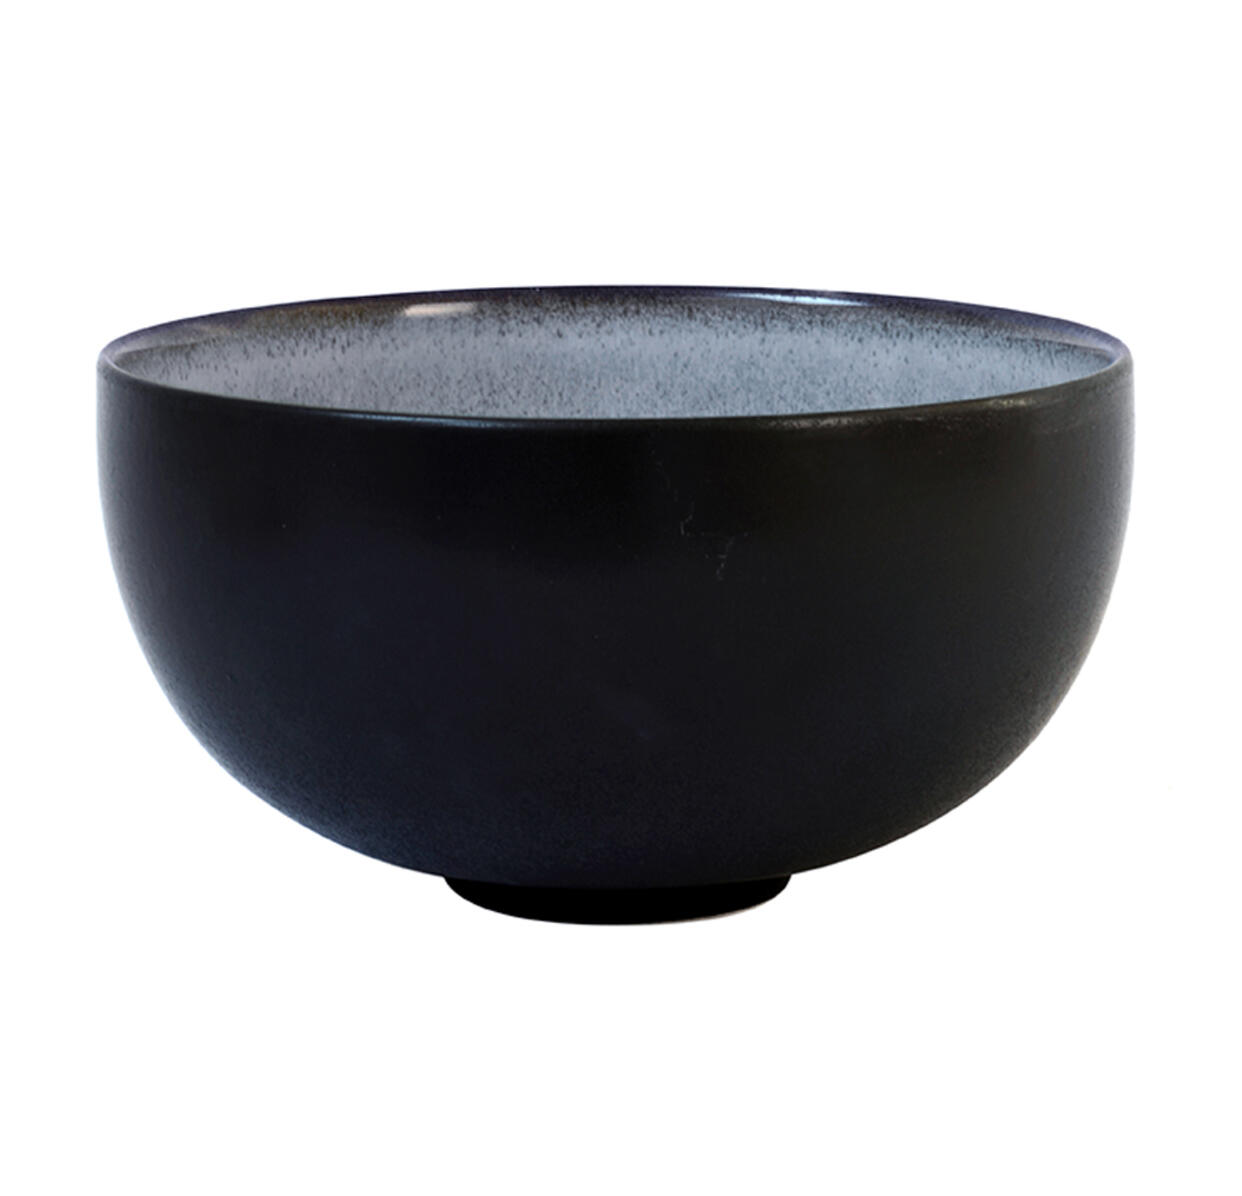 serving bowl m tourron écorce ceramic manufacturer